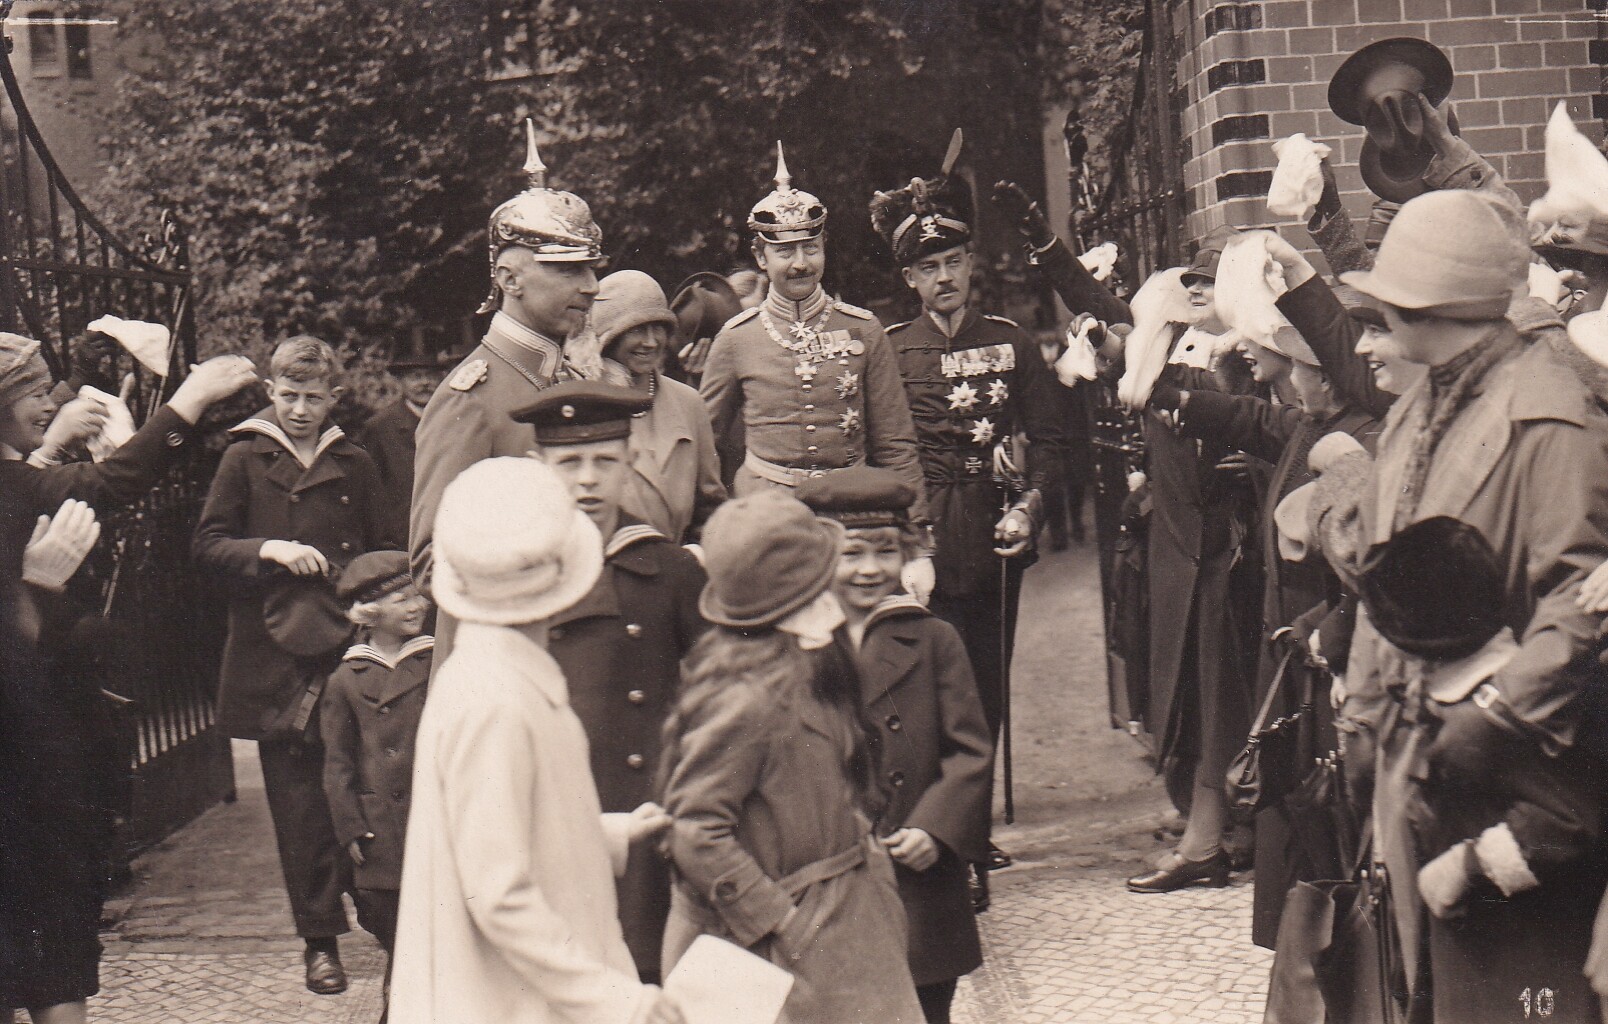 Bildpostkarte mit Foto von Mitgliedern des ehemaligen preußischen Königshauses auf dem Weg zu einer Konfirmation in Potsdam, 25. Mai 1927 (Schloß Wernigerode GmbH RR-F)